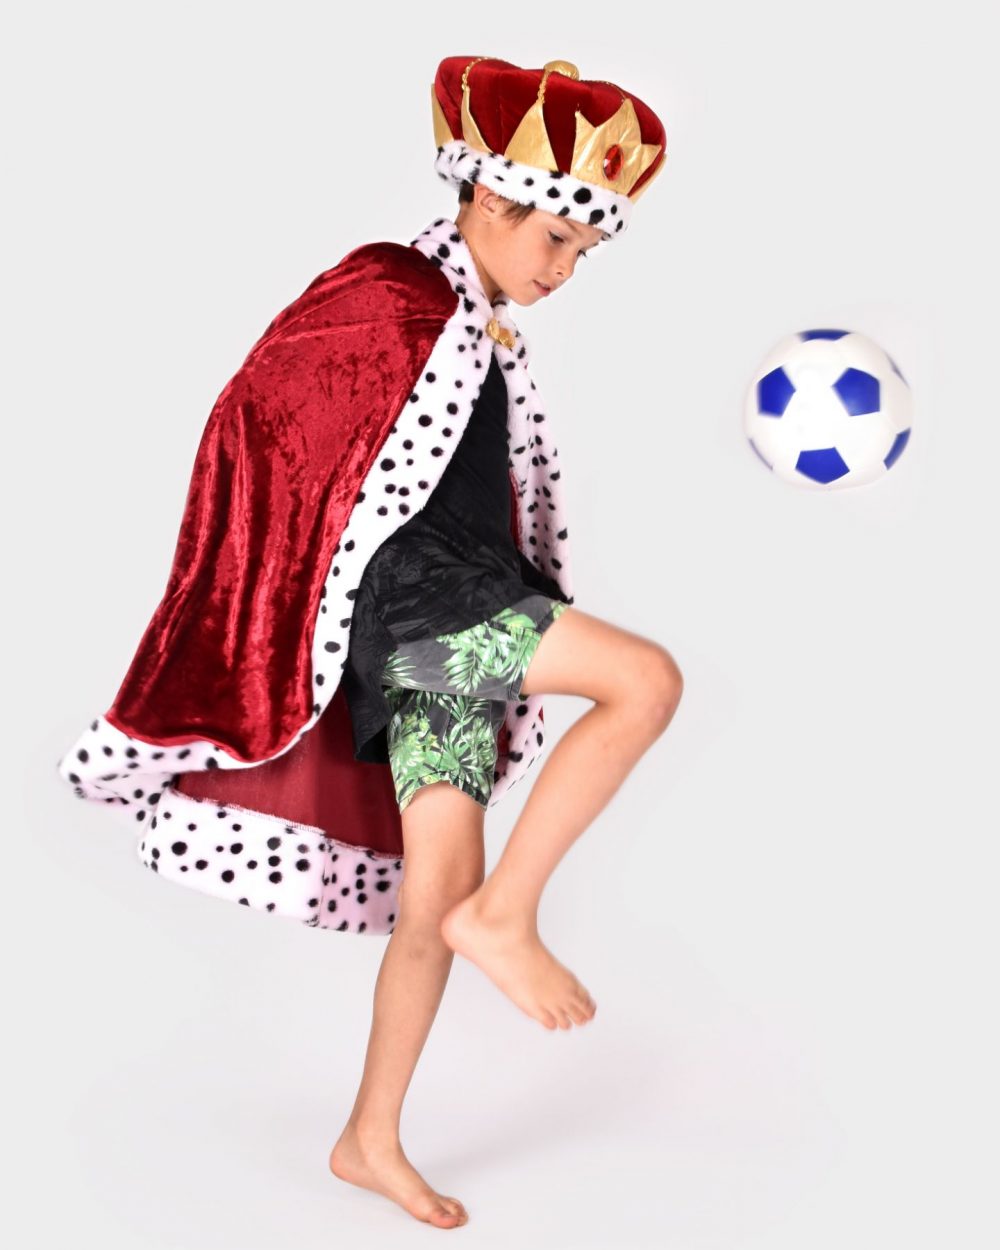 Pojke som spelar fotboll bär en en röd- och guldfärgad kungakrona, samt en röd kungacape. Båda plaggen har detaljer i svartvit fuskpäls.